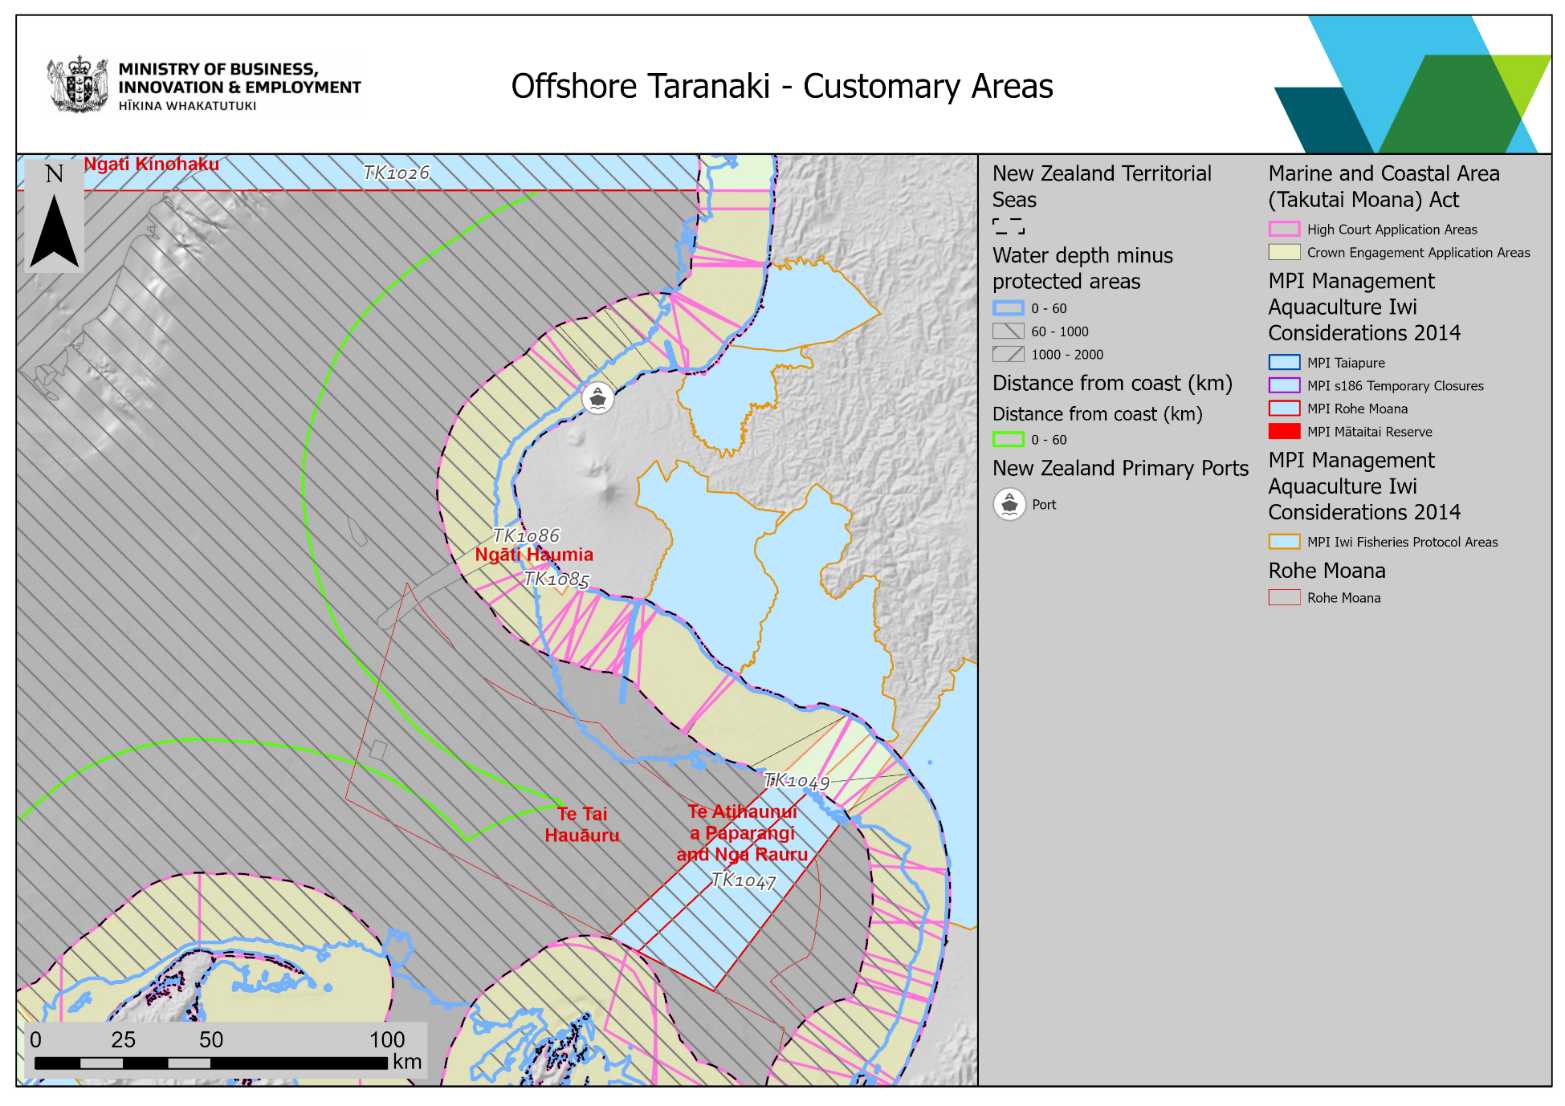 Annex5 offshore taranaki customary areas